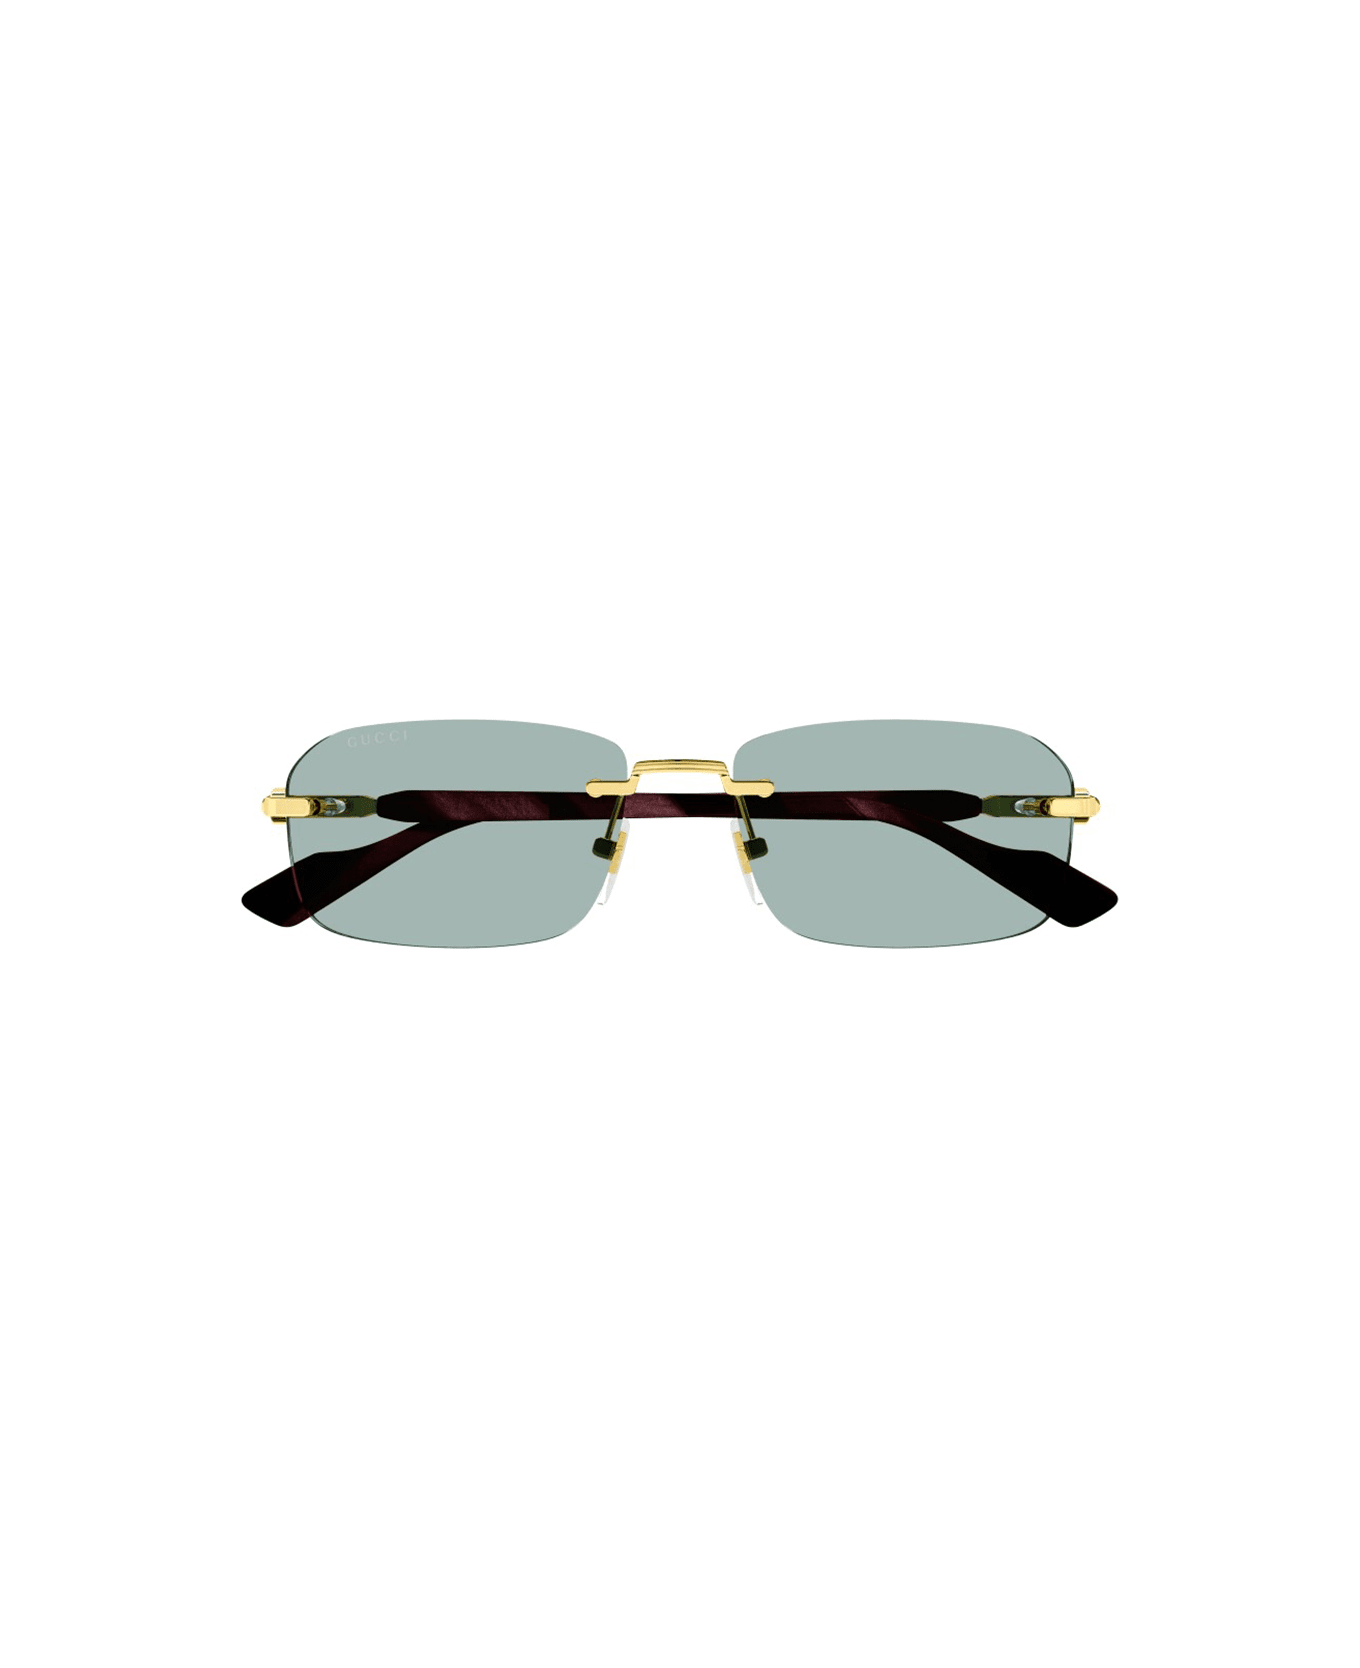 Gucci Eyewear Gg1221s Sunglasses - 003 gold burgundy green